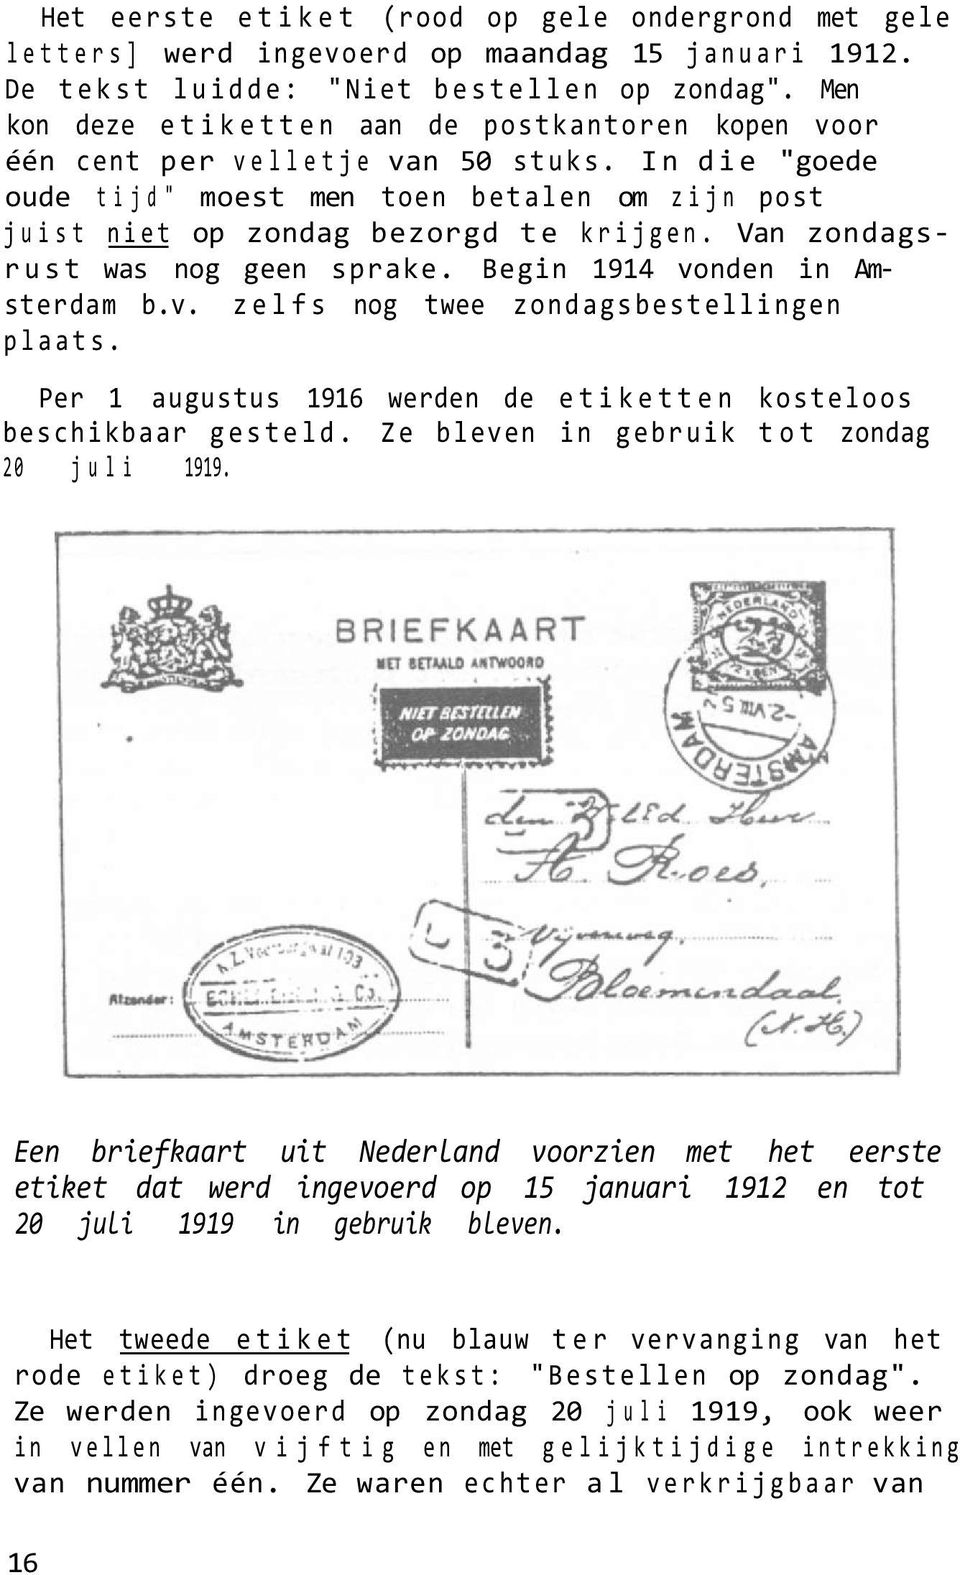 Van zondagsrust was nog geen sprake. Begin 1914 vonden in Amsterdam b.v. zelfs nog twee zondagsbestellingen plaats. Per 1 augustus 1916 werden de etiketten kosteloos beschikbaar gesteld.